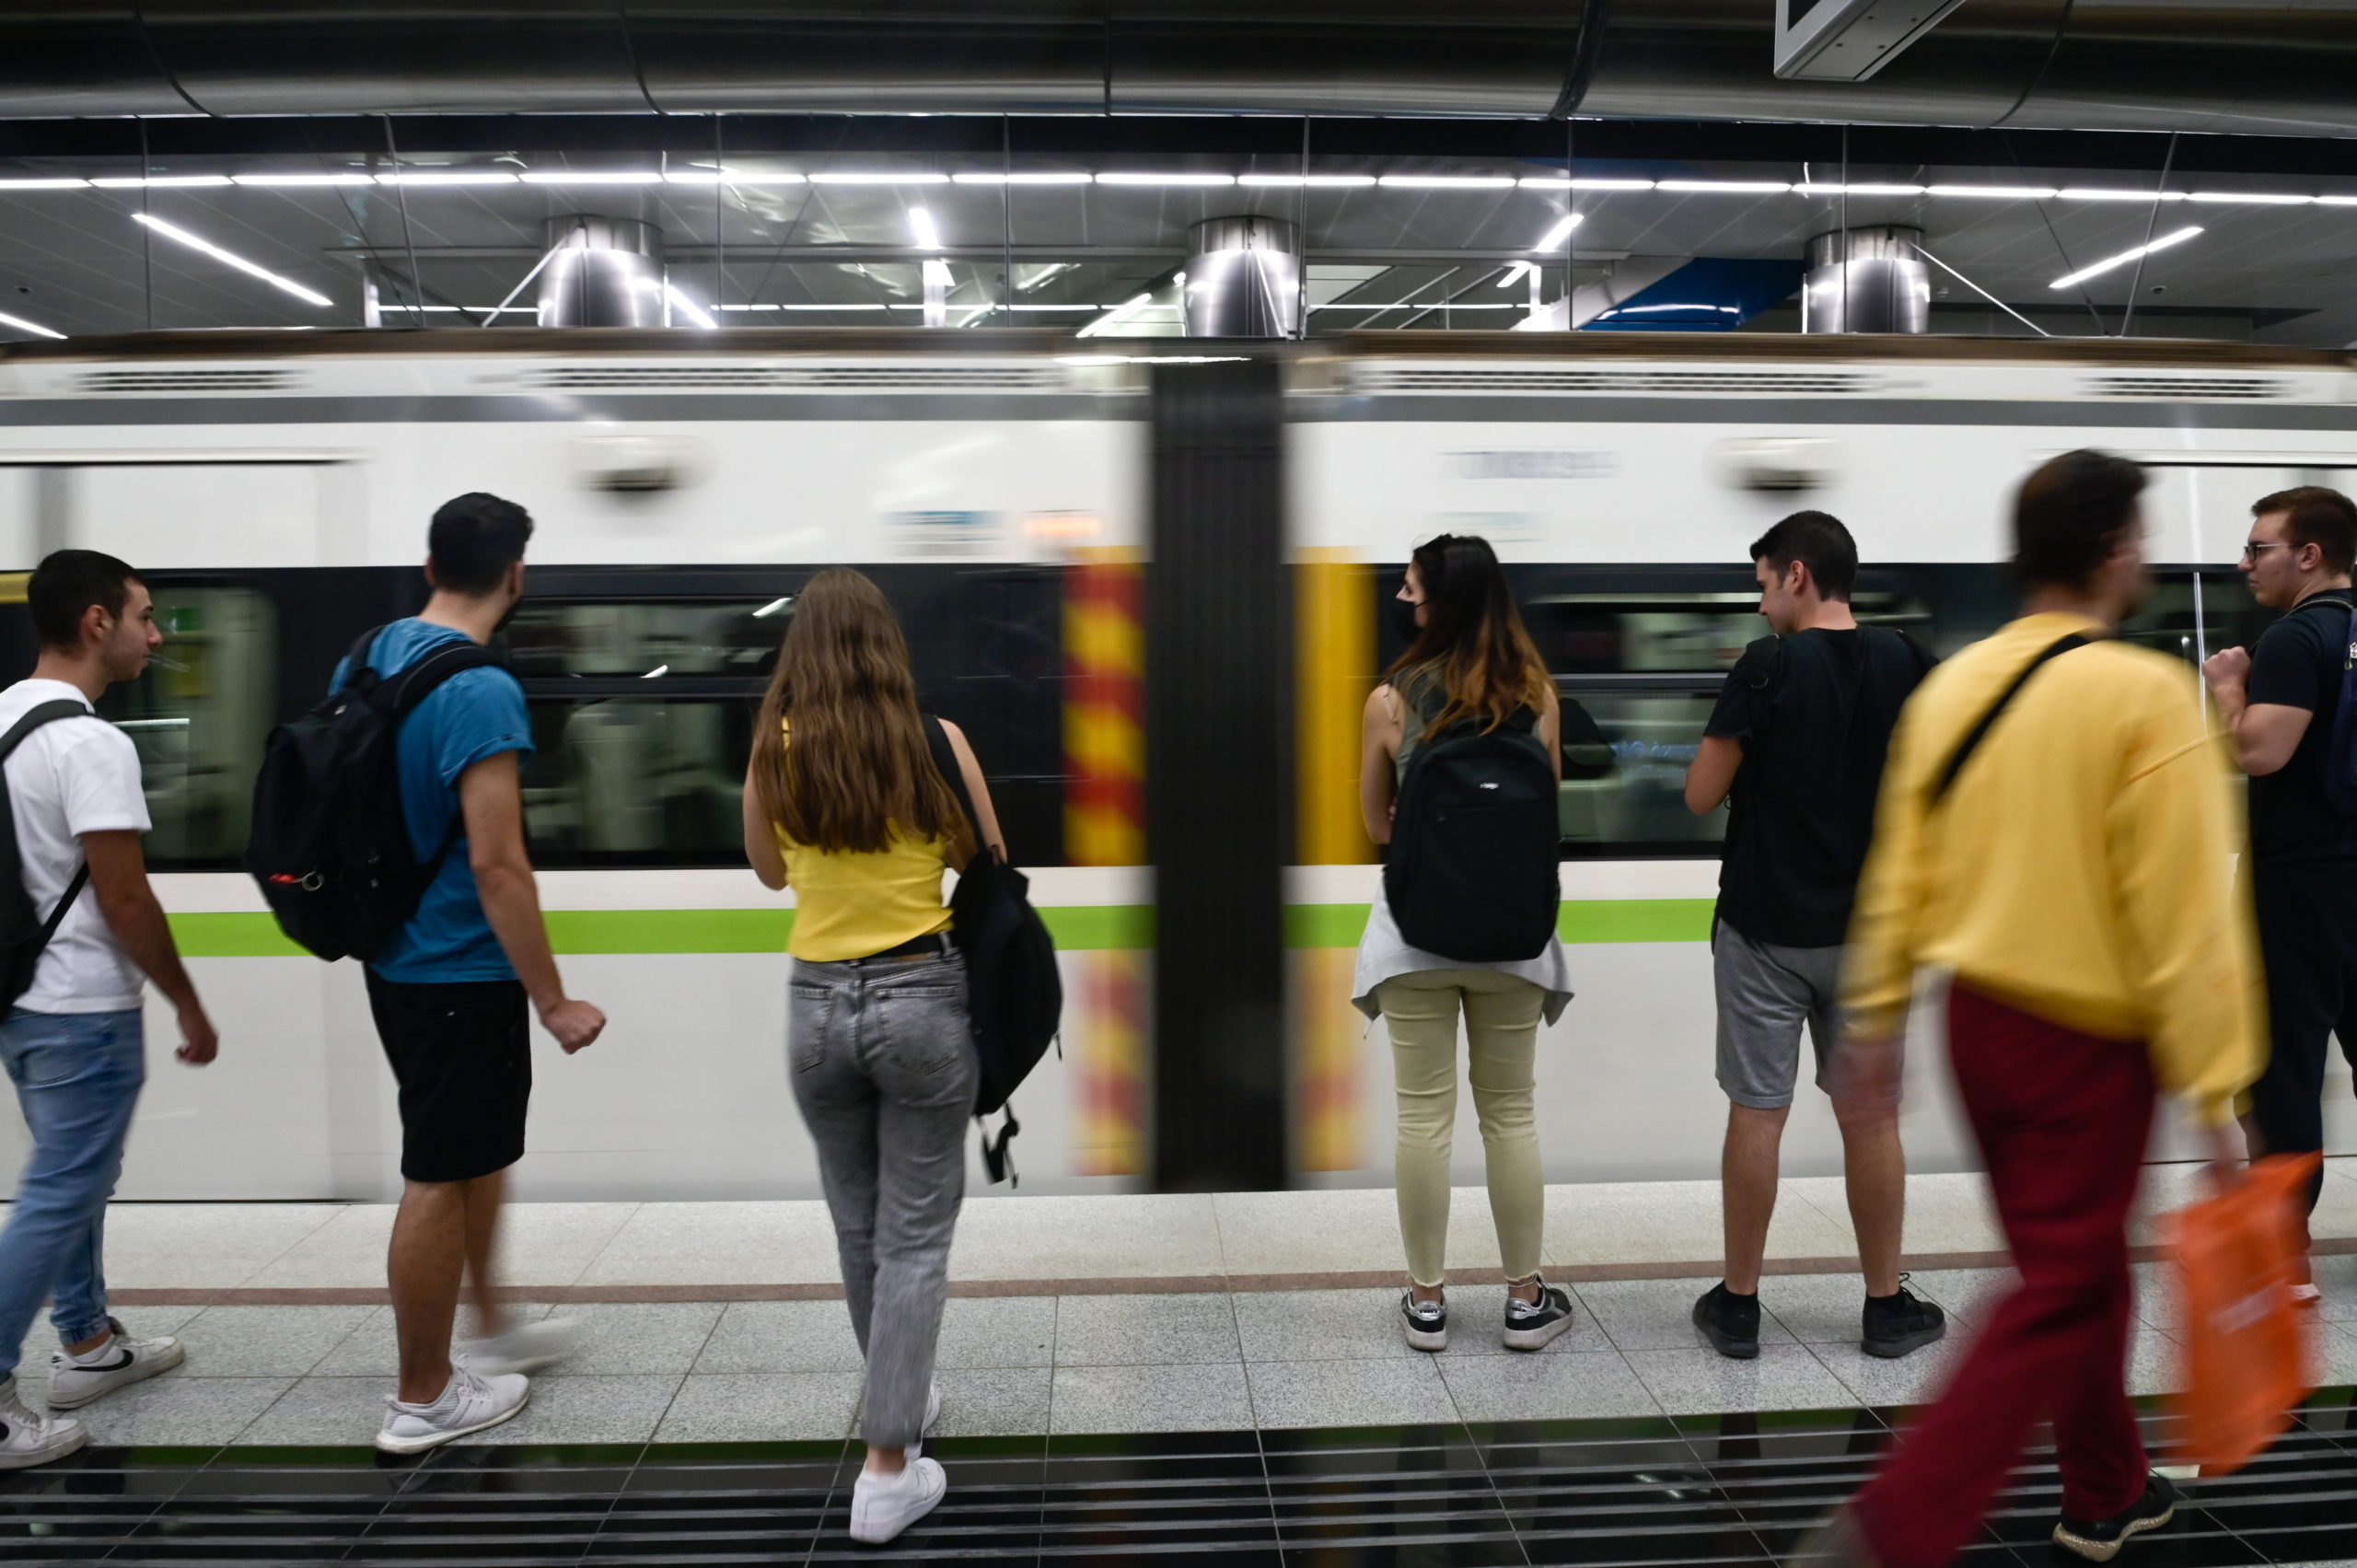 Κ. Καραμανλής: Με το Μετρό ο Πειραιάς γίνεται μία πιο ανθρώπινη πόλη